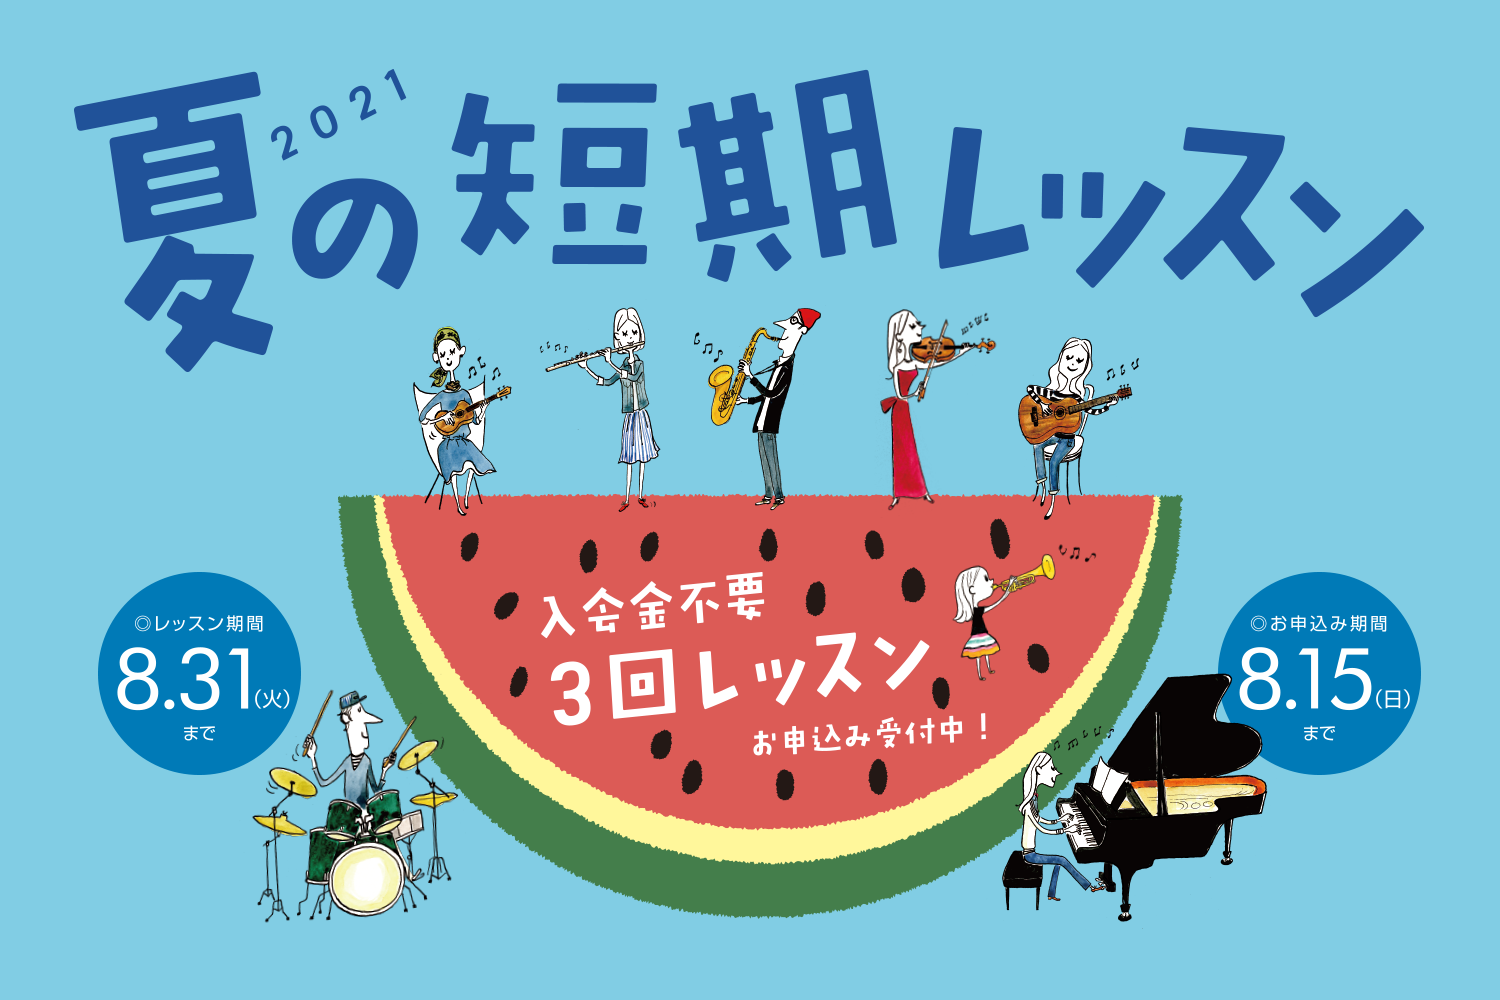 JR平井駅から徒歩1分♪島村楽器ミュージックサロン平井では、今年も『夏の短期レッスン』を実施します！ご入会金不要で、1コース3回のレッスンが受けられる！とってもお得なレッスンとなります。 →→→→→[https://www.shimamura.co.jp/p/lesson/campaign/shor […]